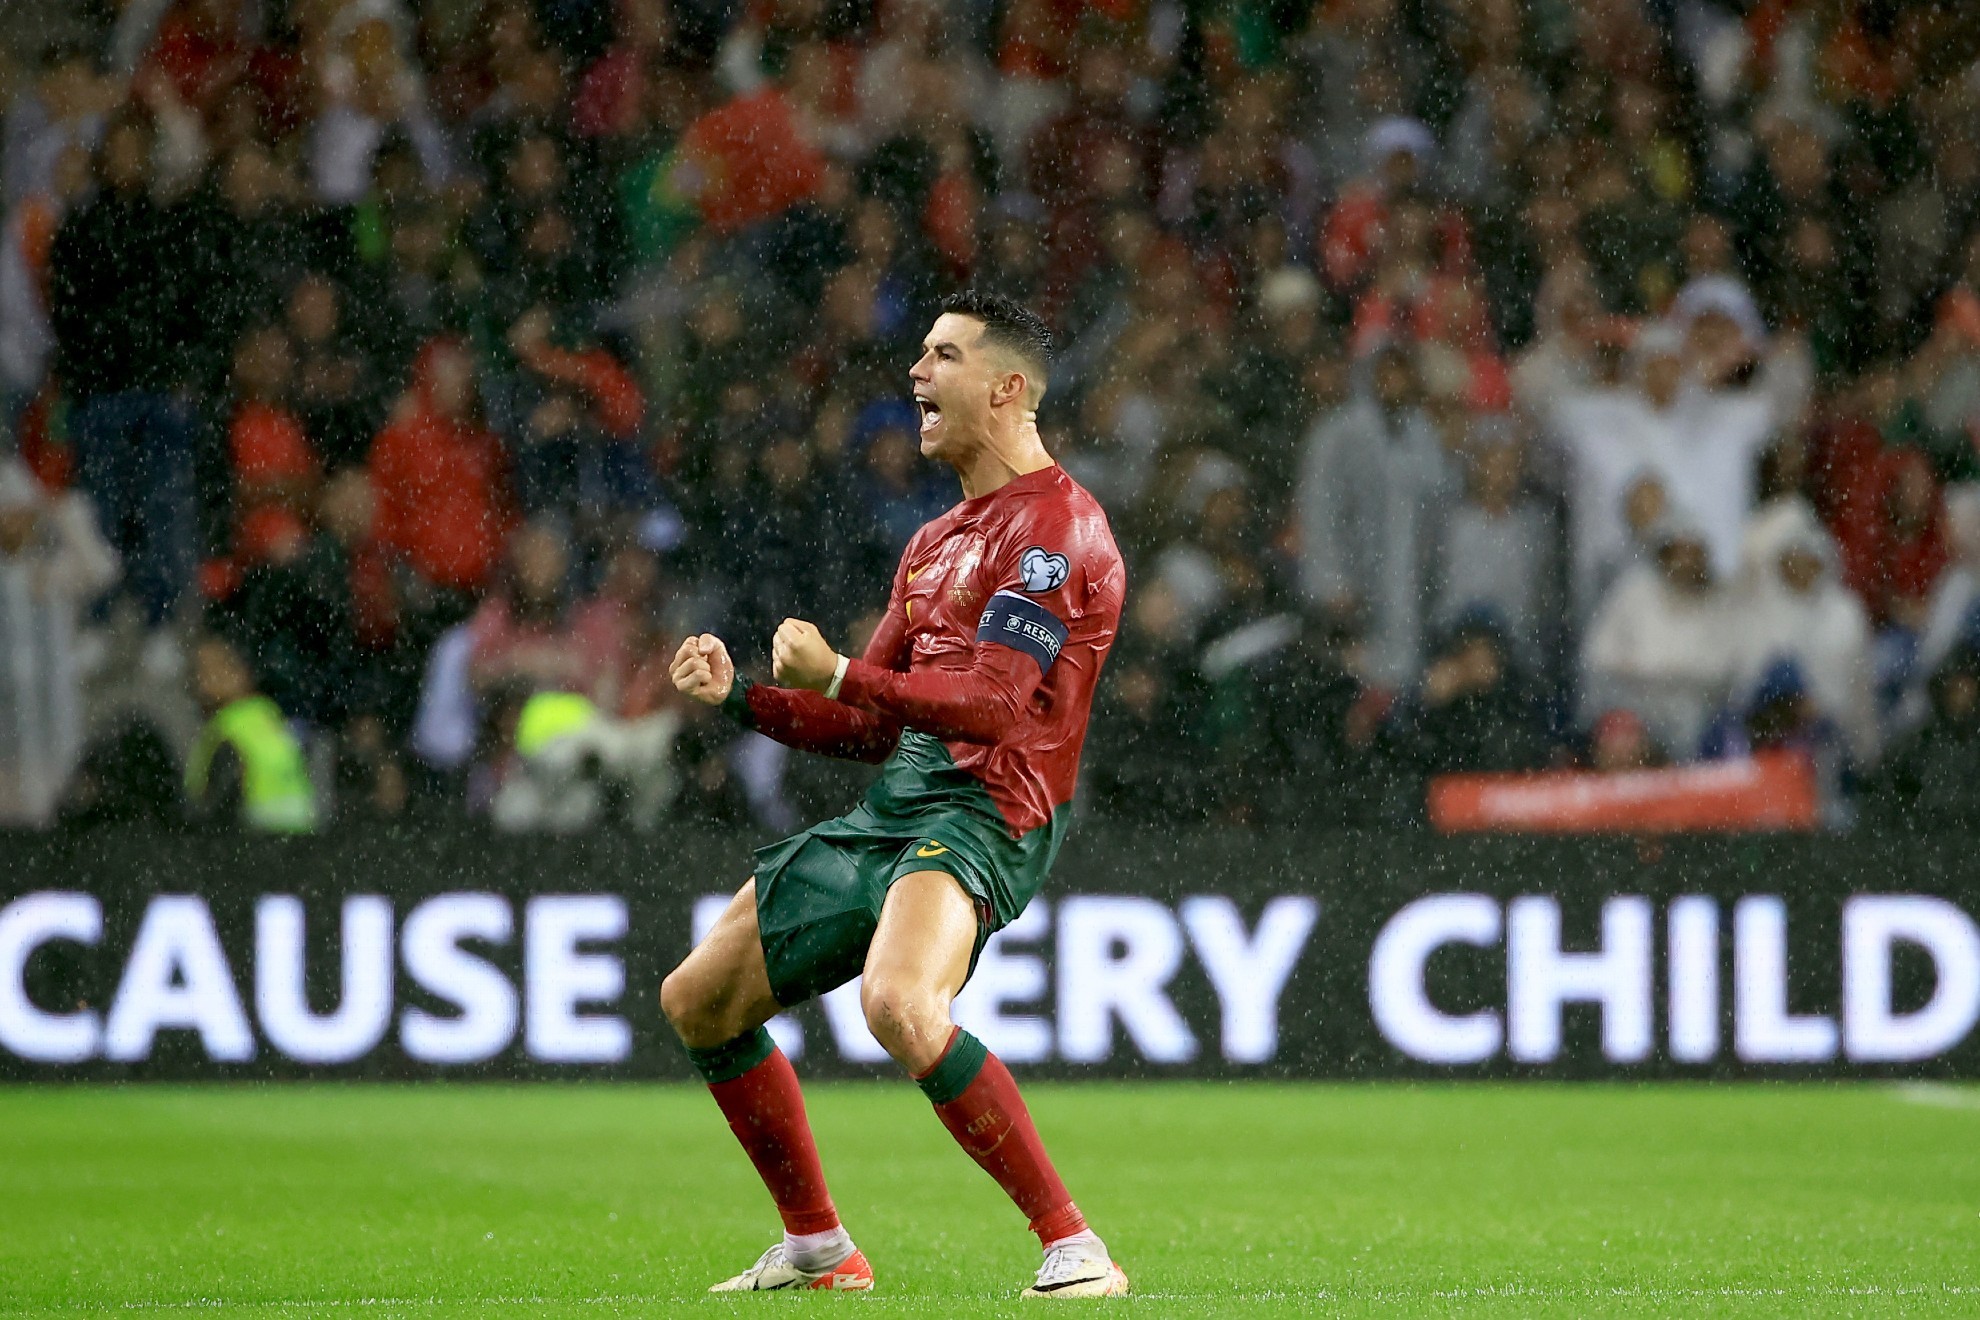 Cristiano Ronaldo recibió críticas antes de ser uno de los mejores en el  fútbol